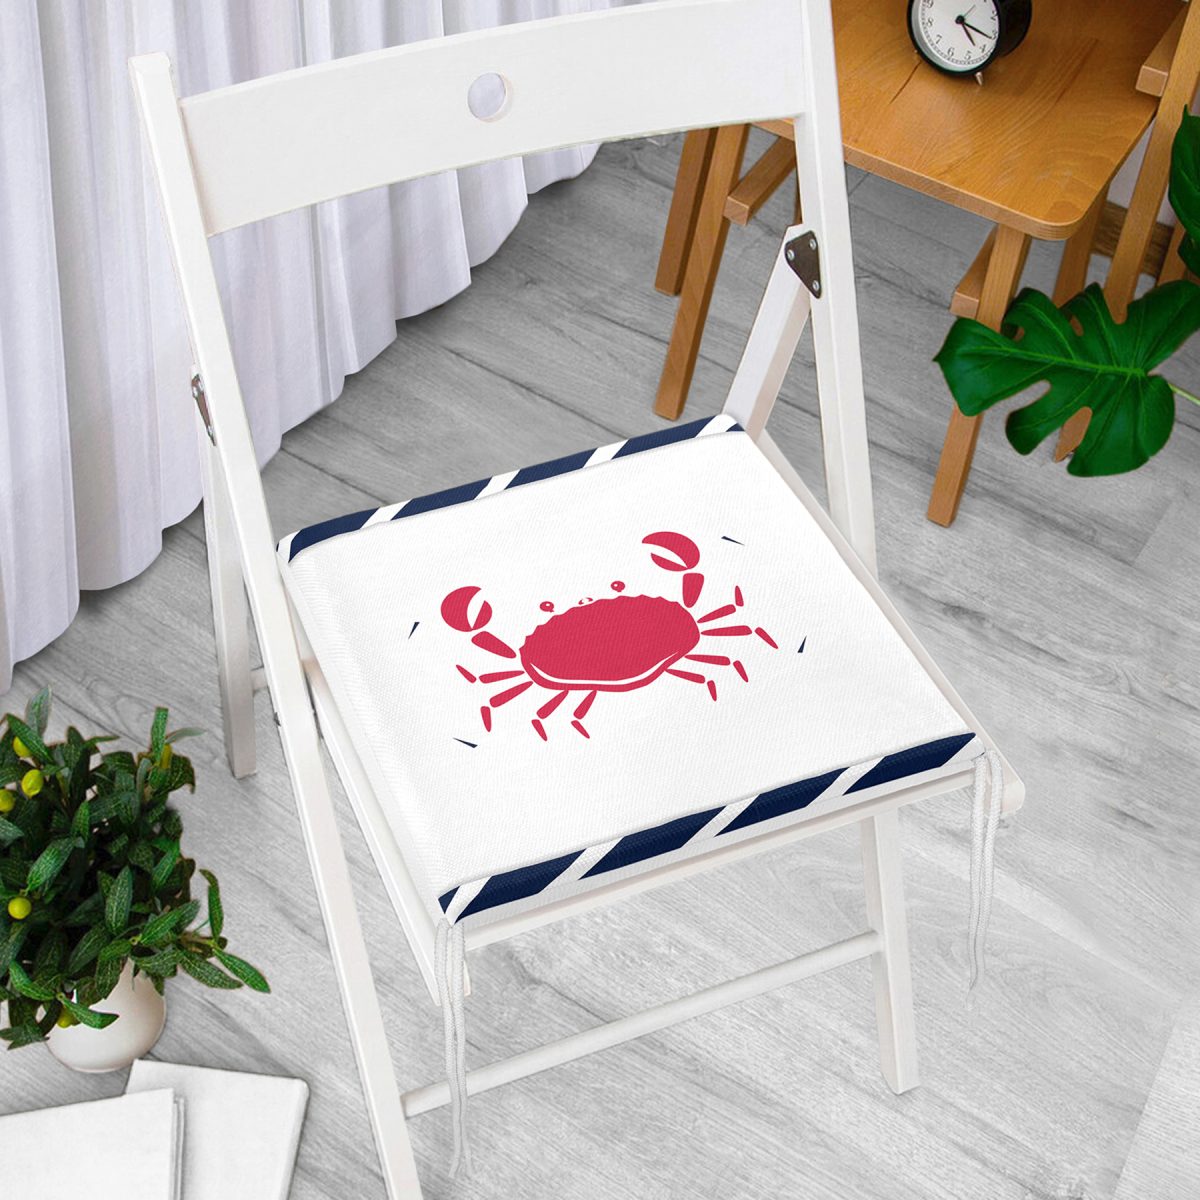 Beyaz Zemin Üzerinde Renkli Yengeç Desenli Dijital Baskılı Modern Fermuarlı Sandalye Minderi Realhomes